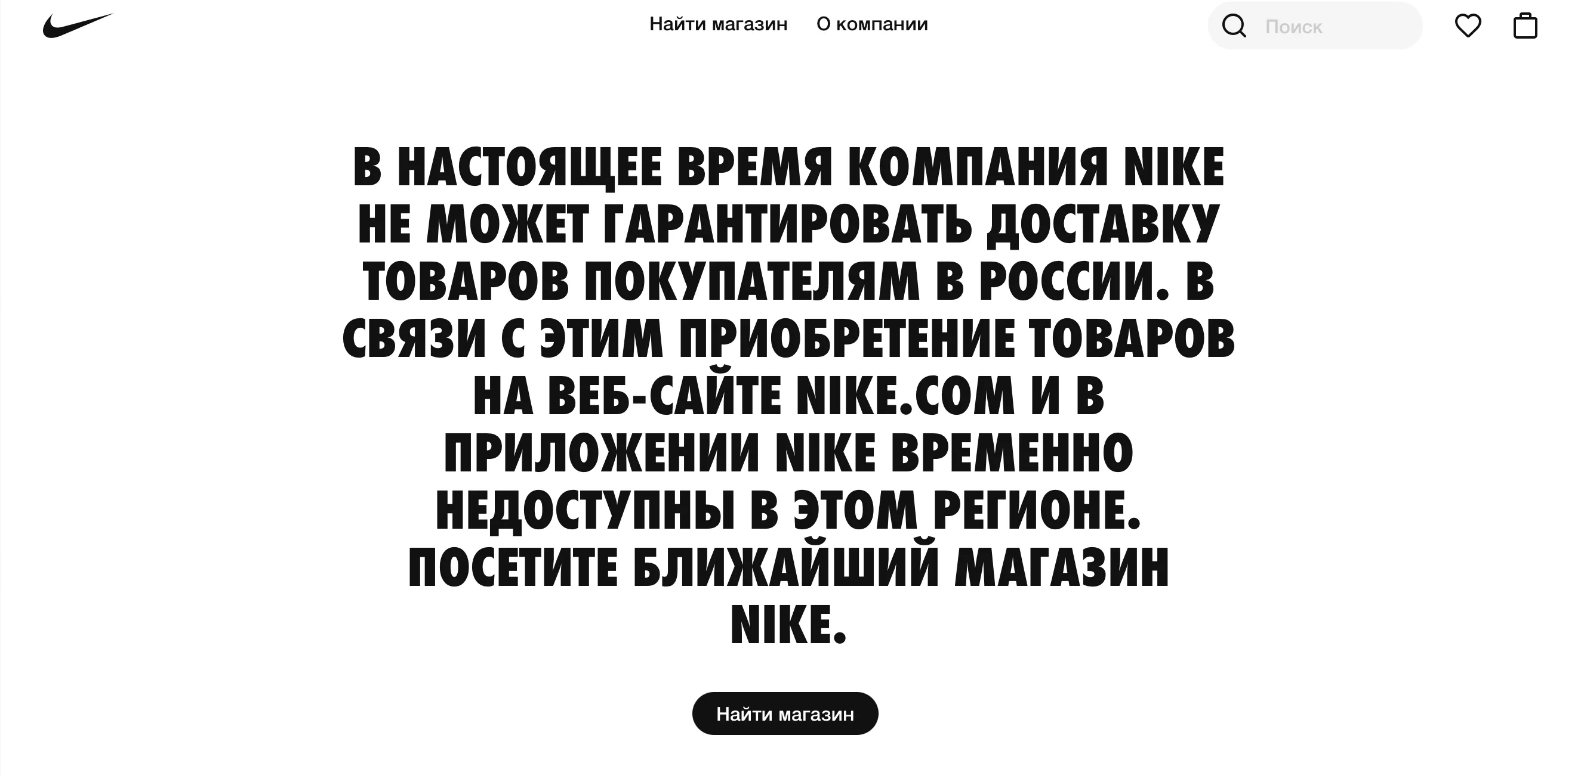 Nike приостанавливает продажи в России